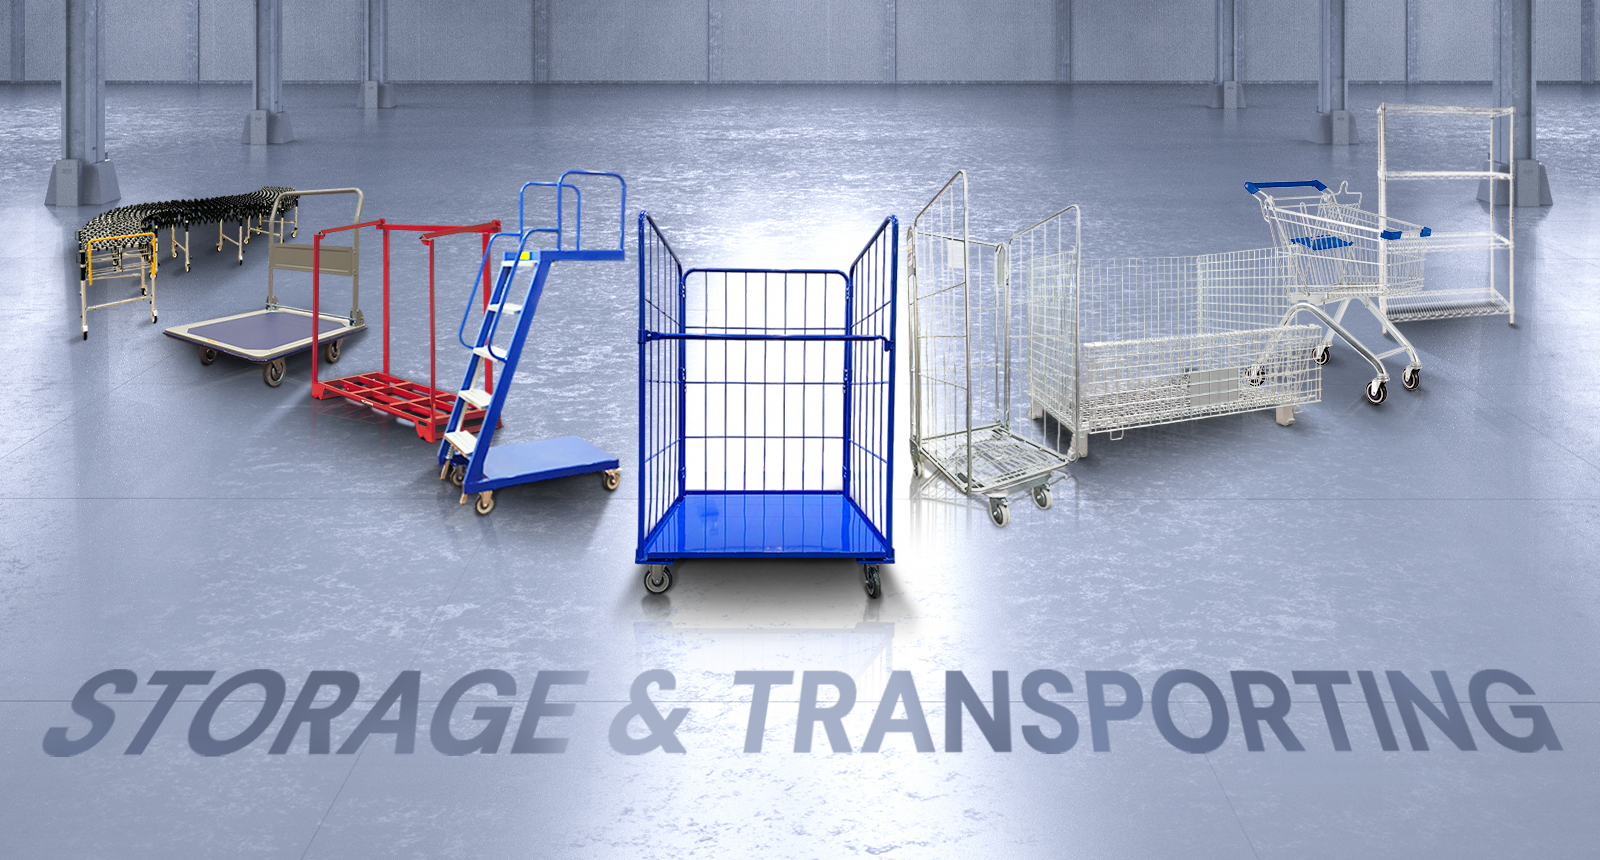 Storage & Transporting